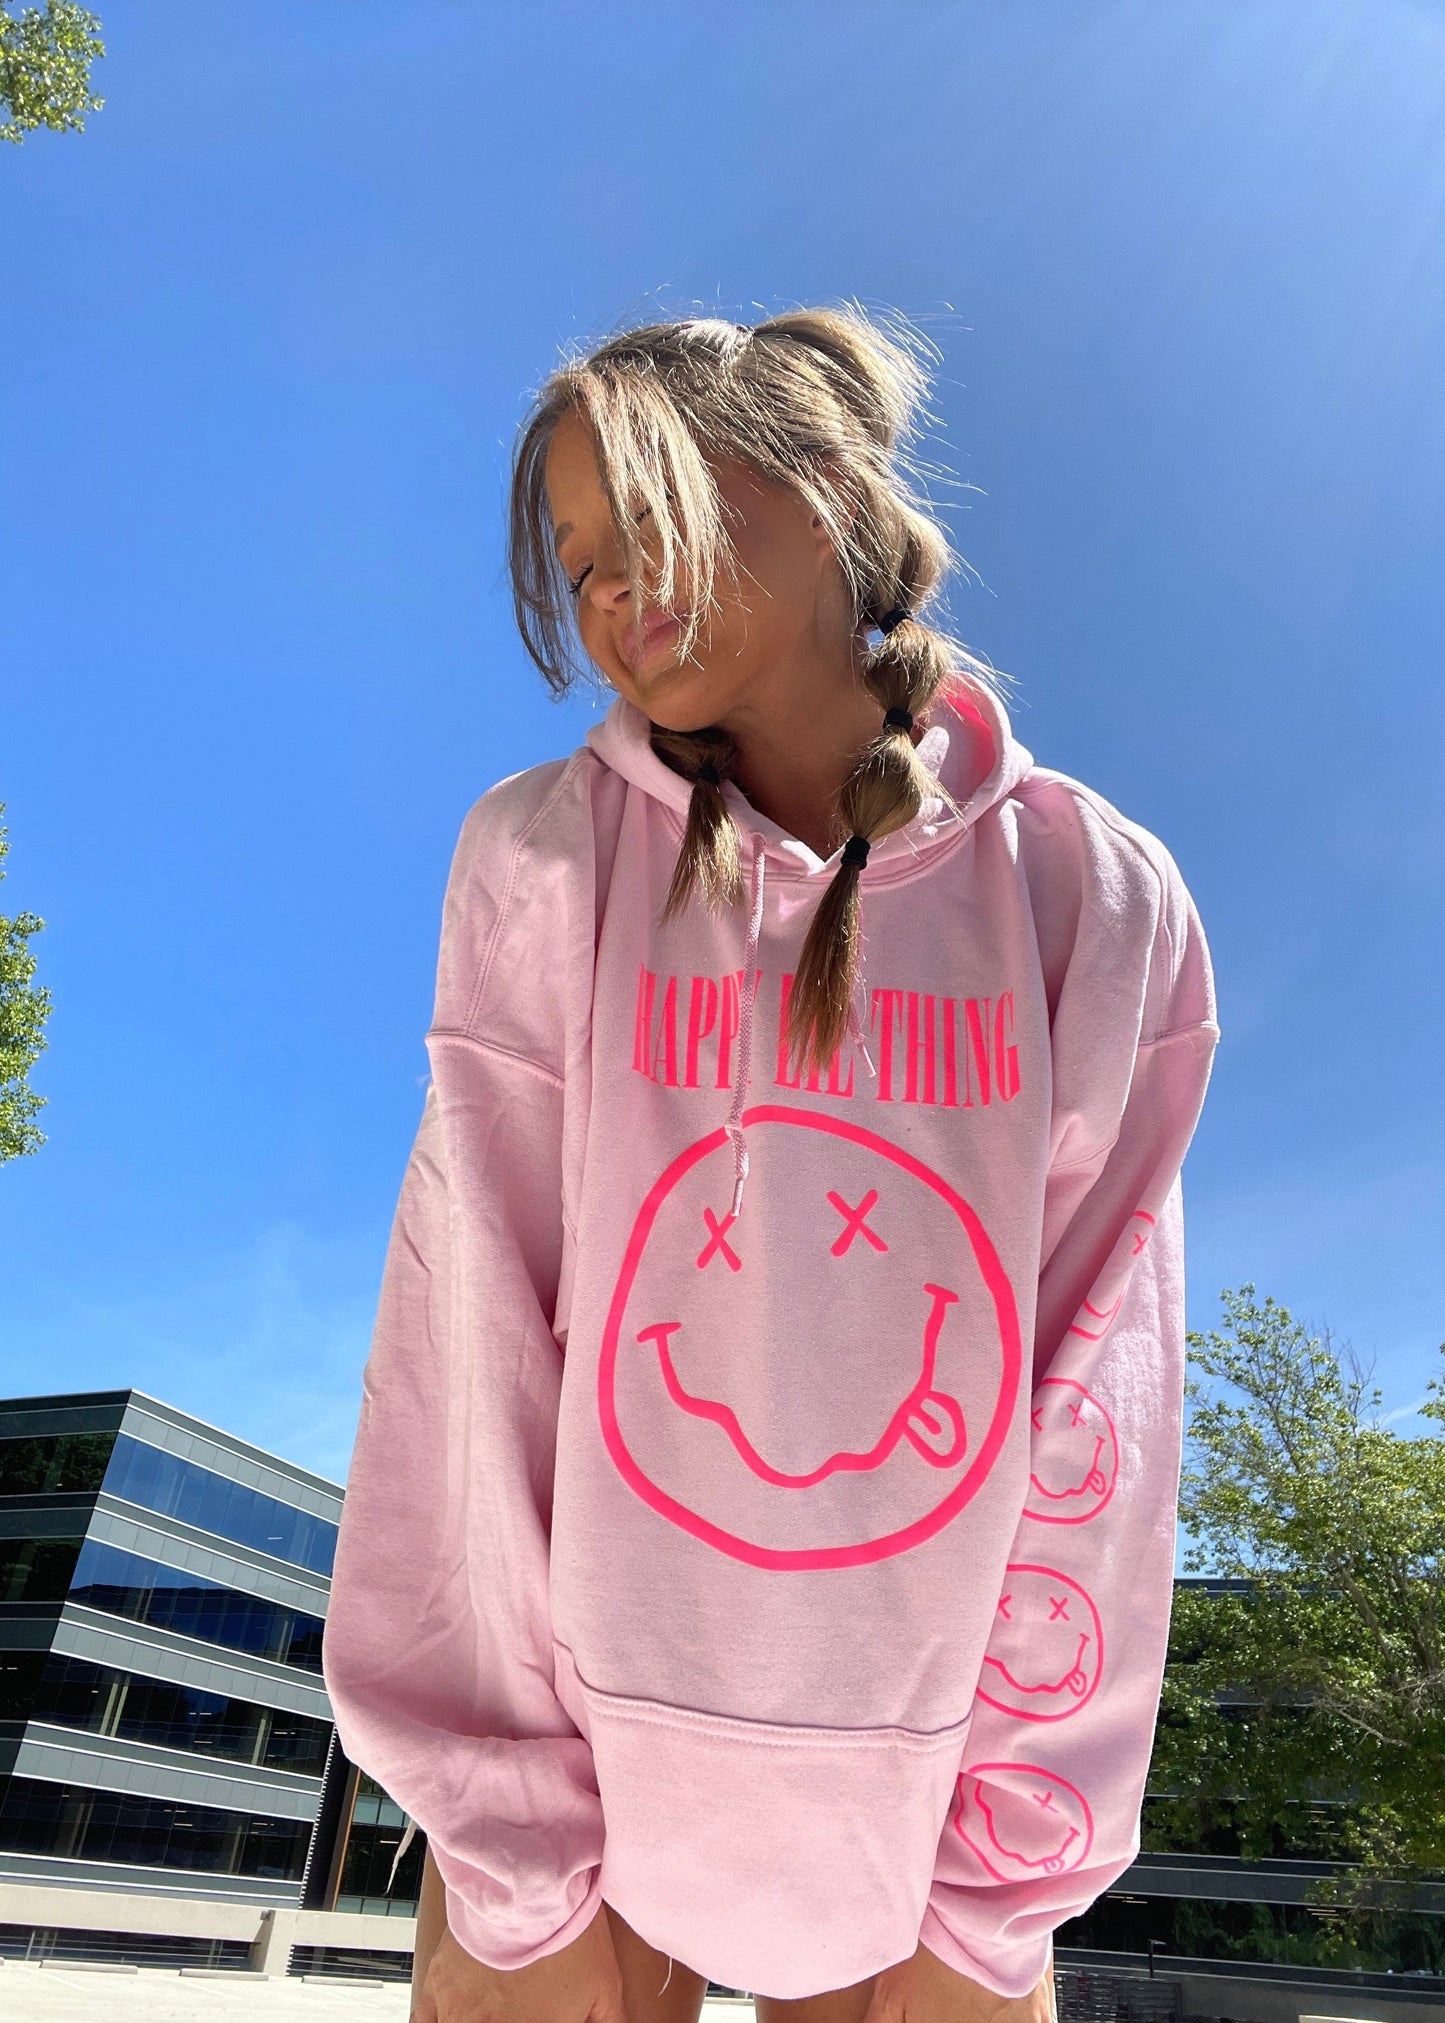 pink happy lil thing hoodie